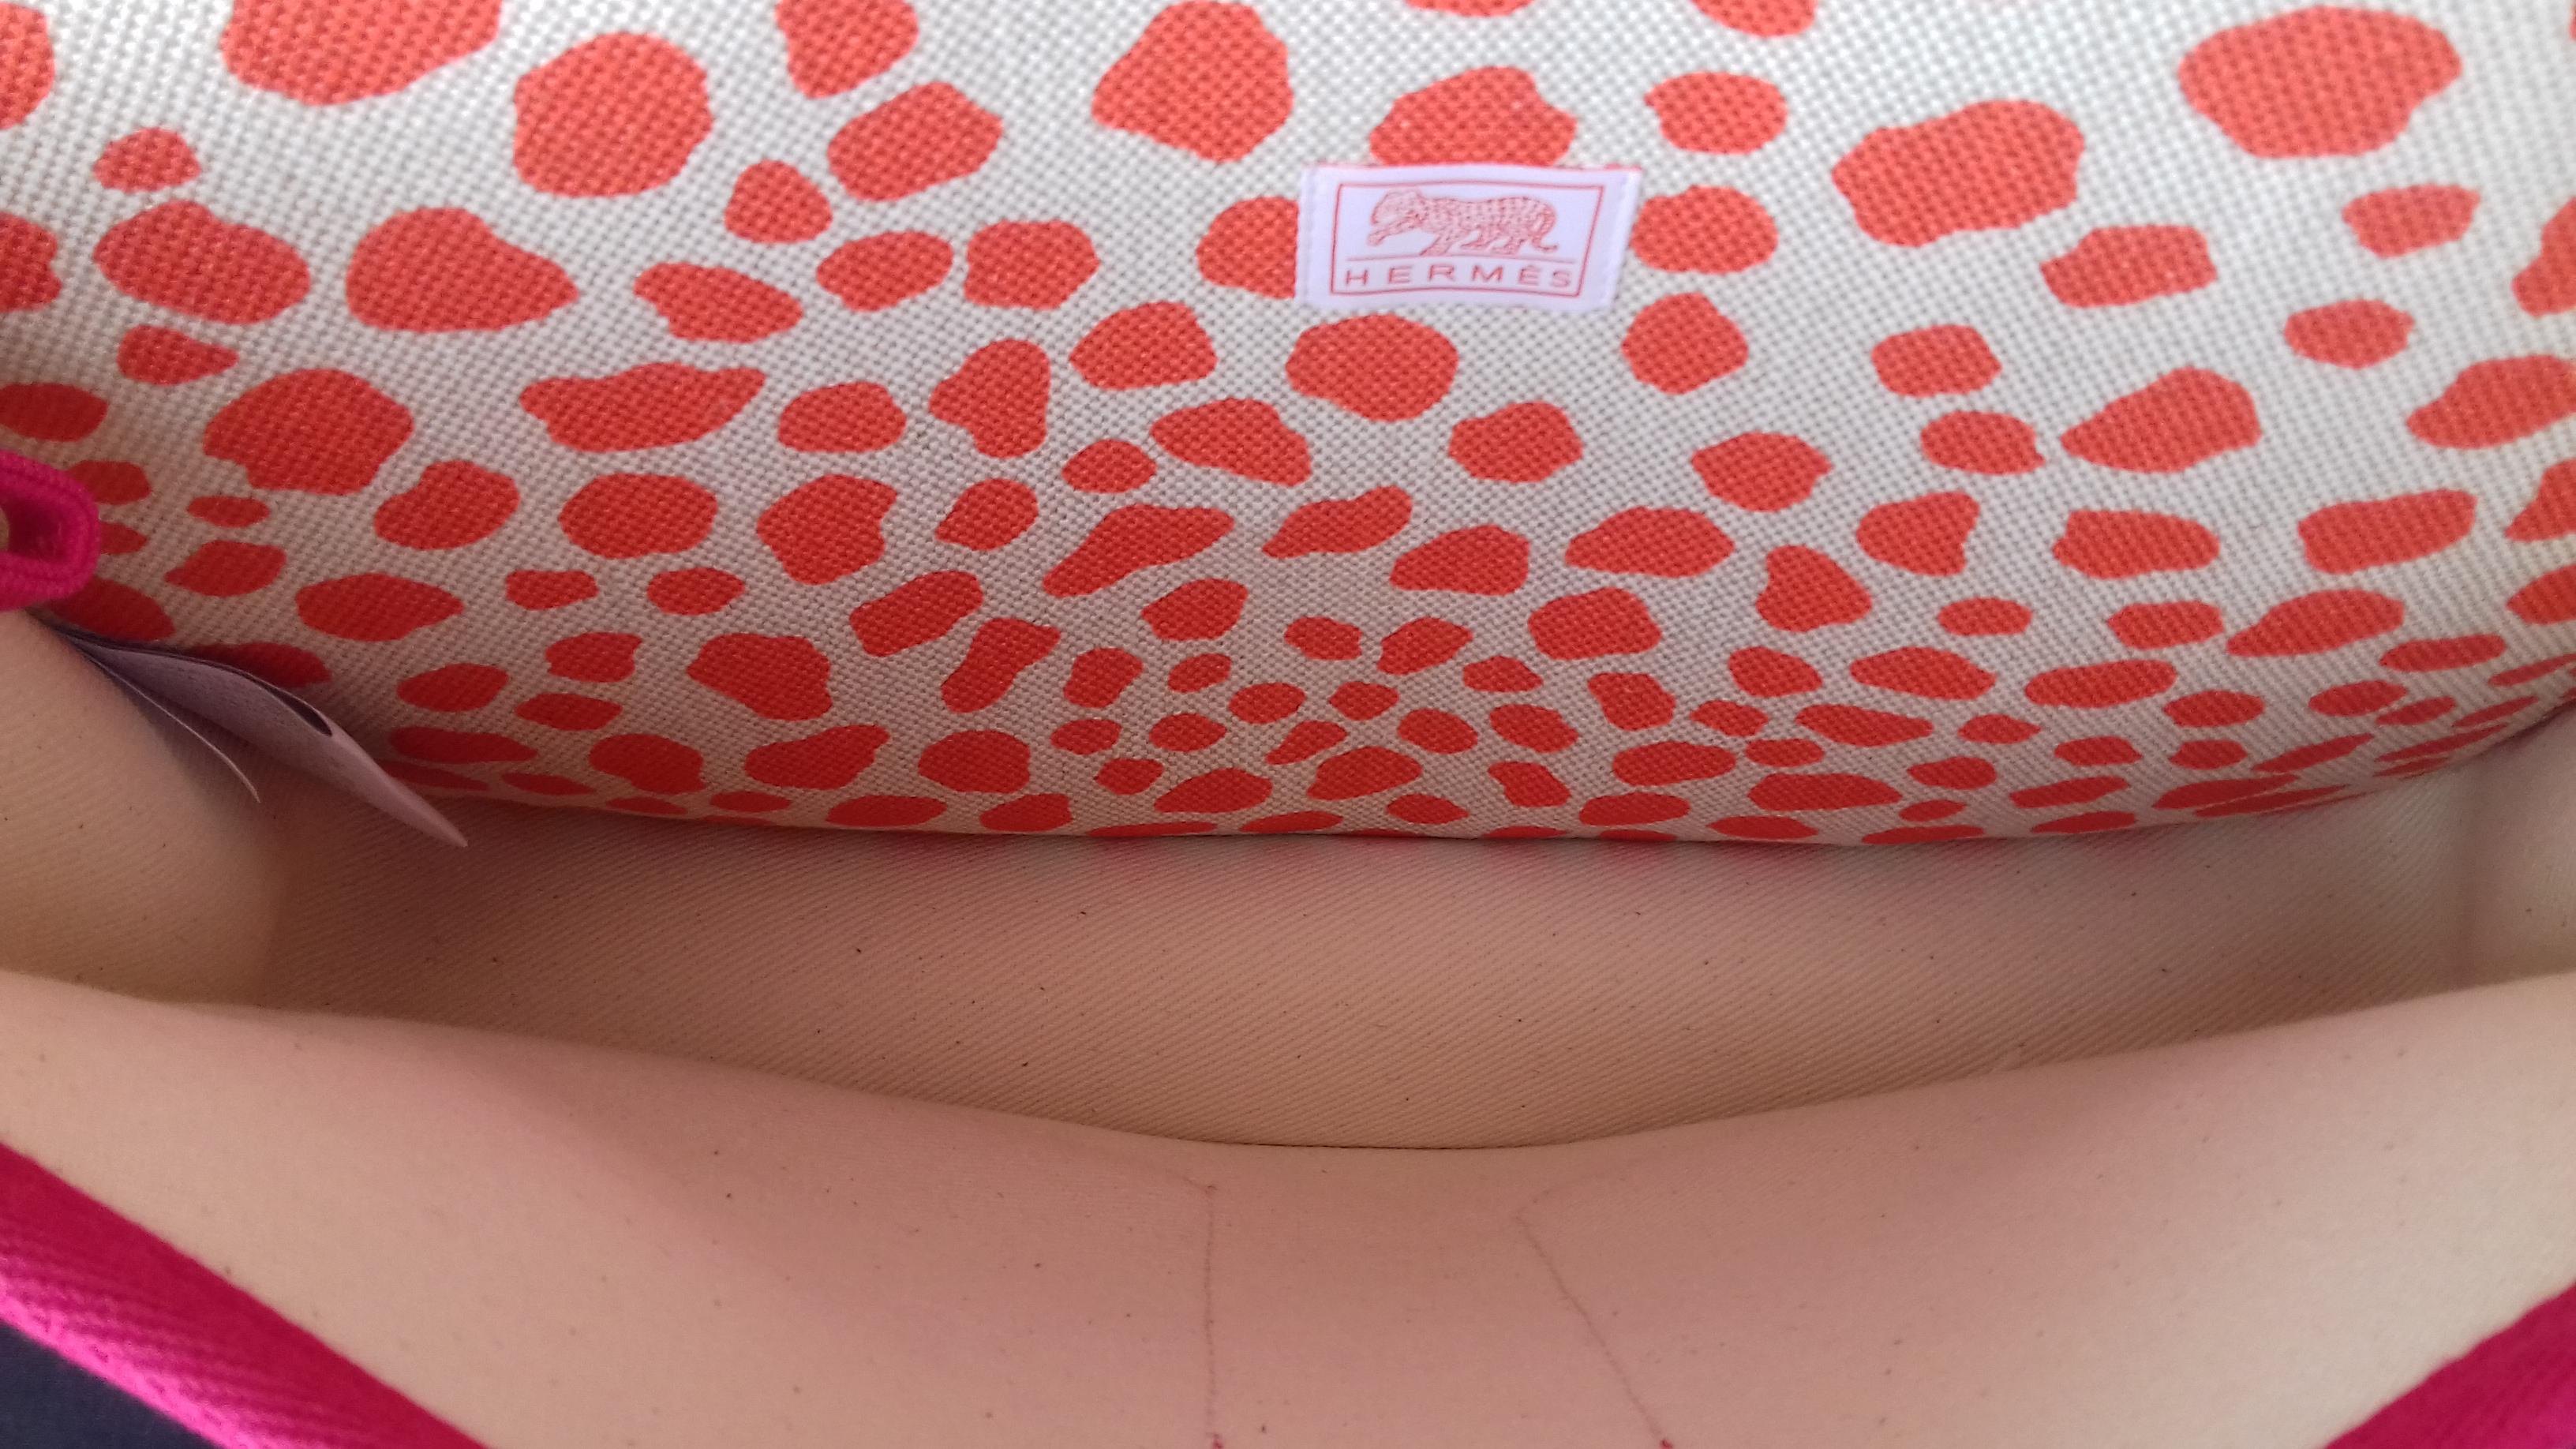 Hermès School Bag Cartable Toile Jeux dans la Jungle Pink Tangerine 3 ways  4